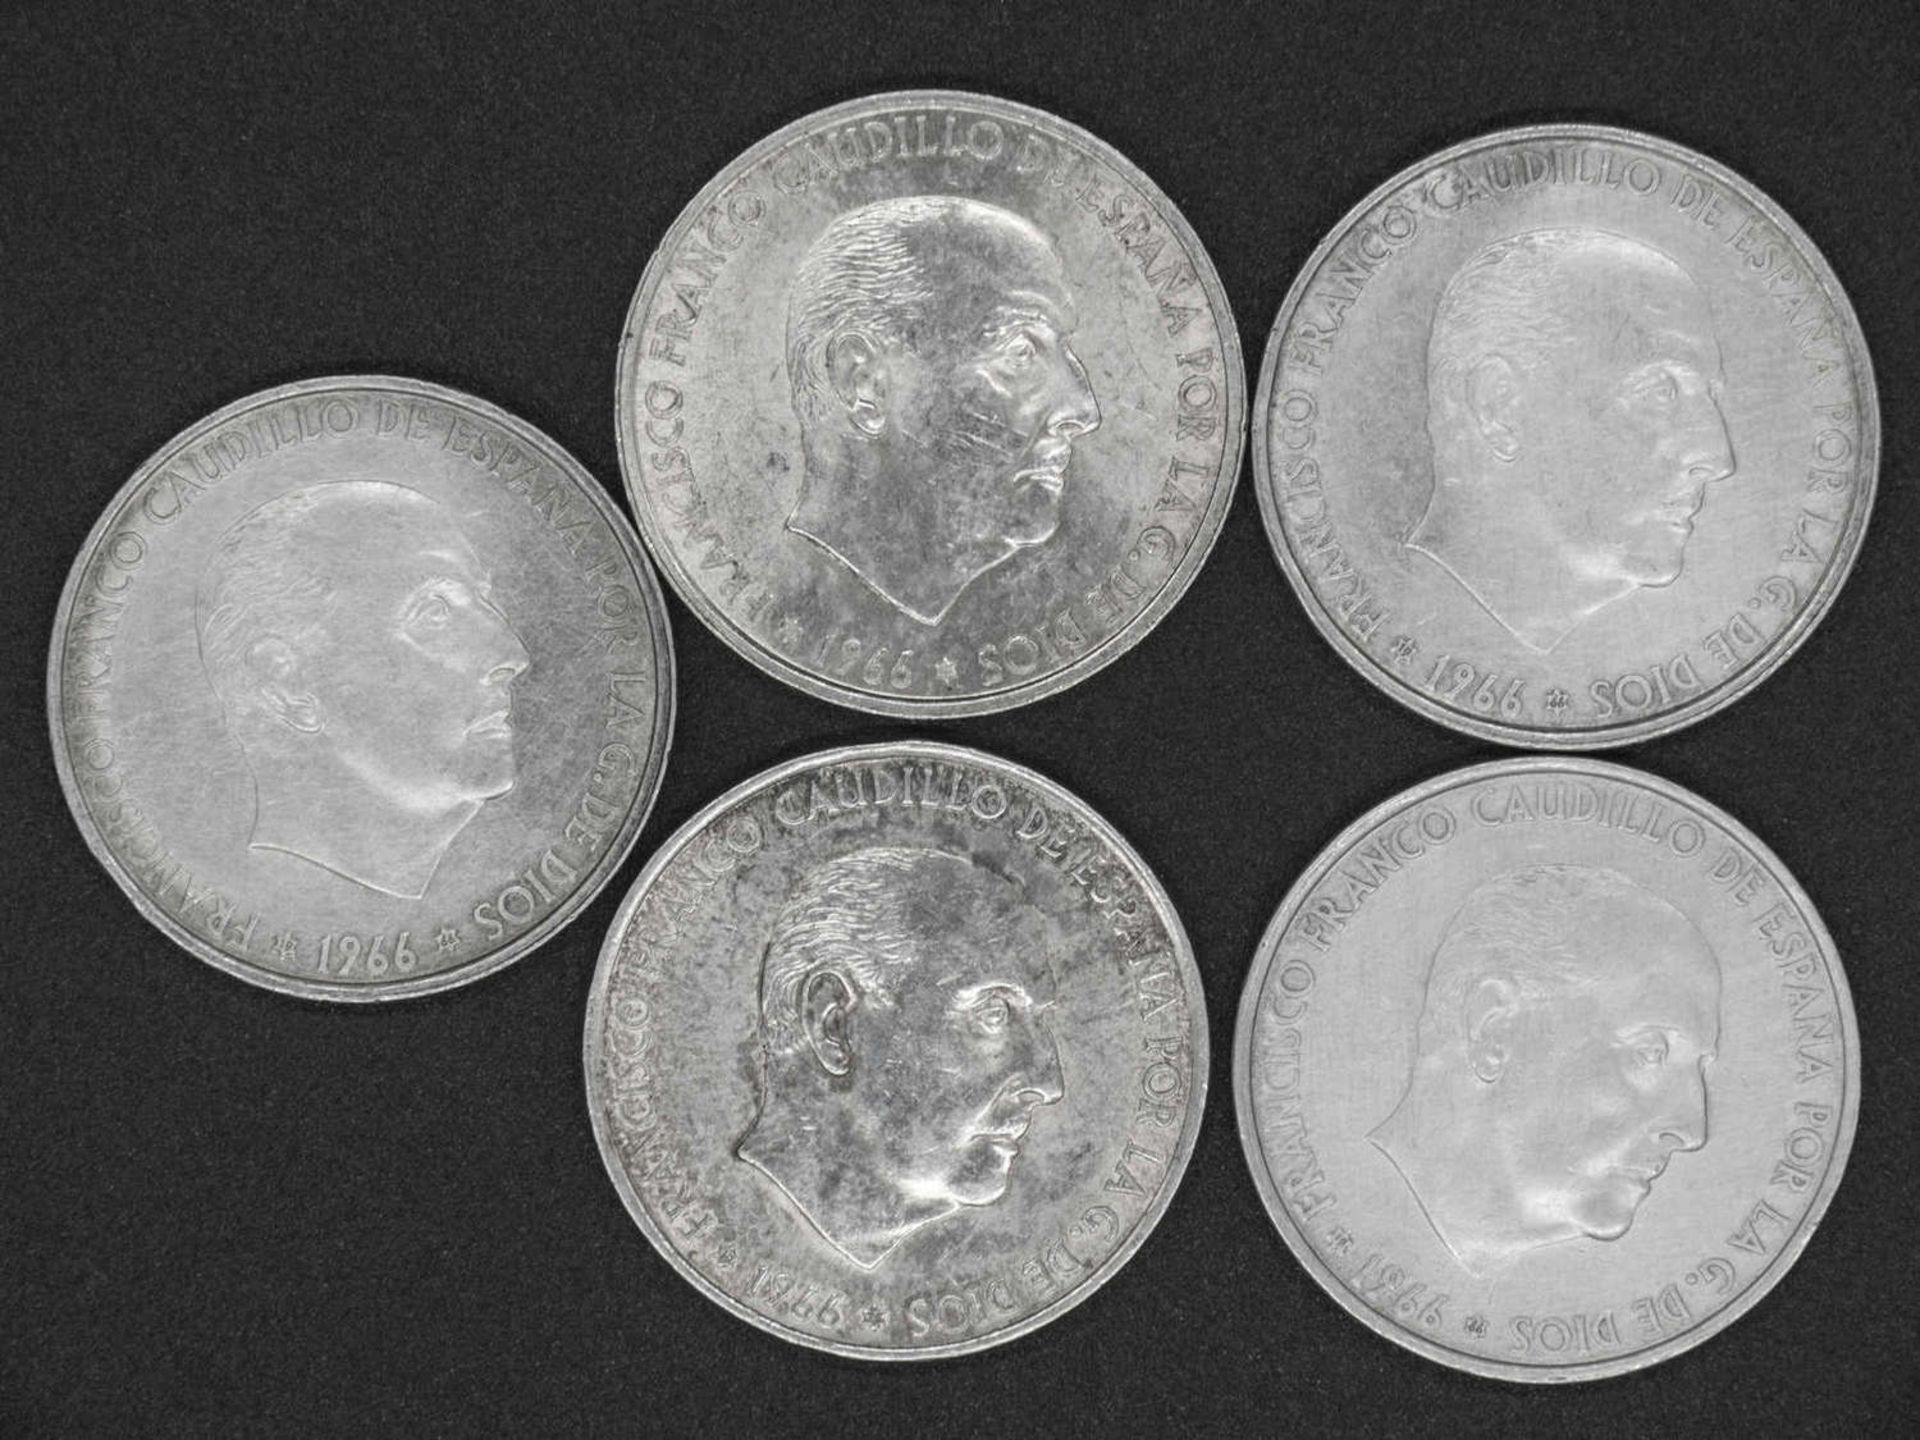 Spanien 1966, 5 x 100.- Pesetas - Silbermünzen "Franco". Gesamtgewicht: ca. 95,8 g. Erhaltung: ss-